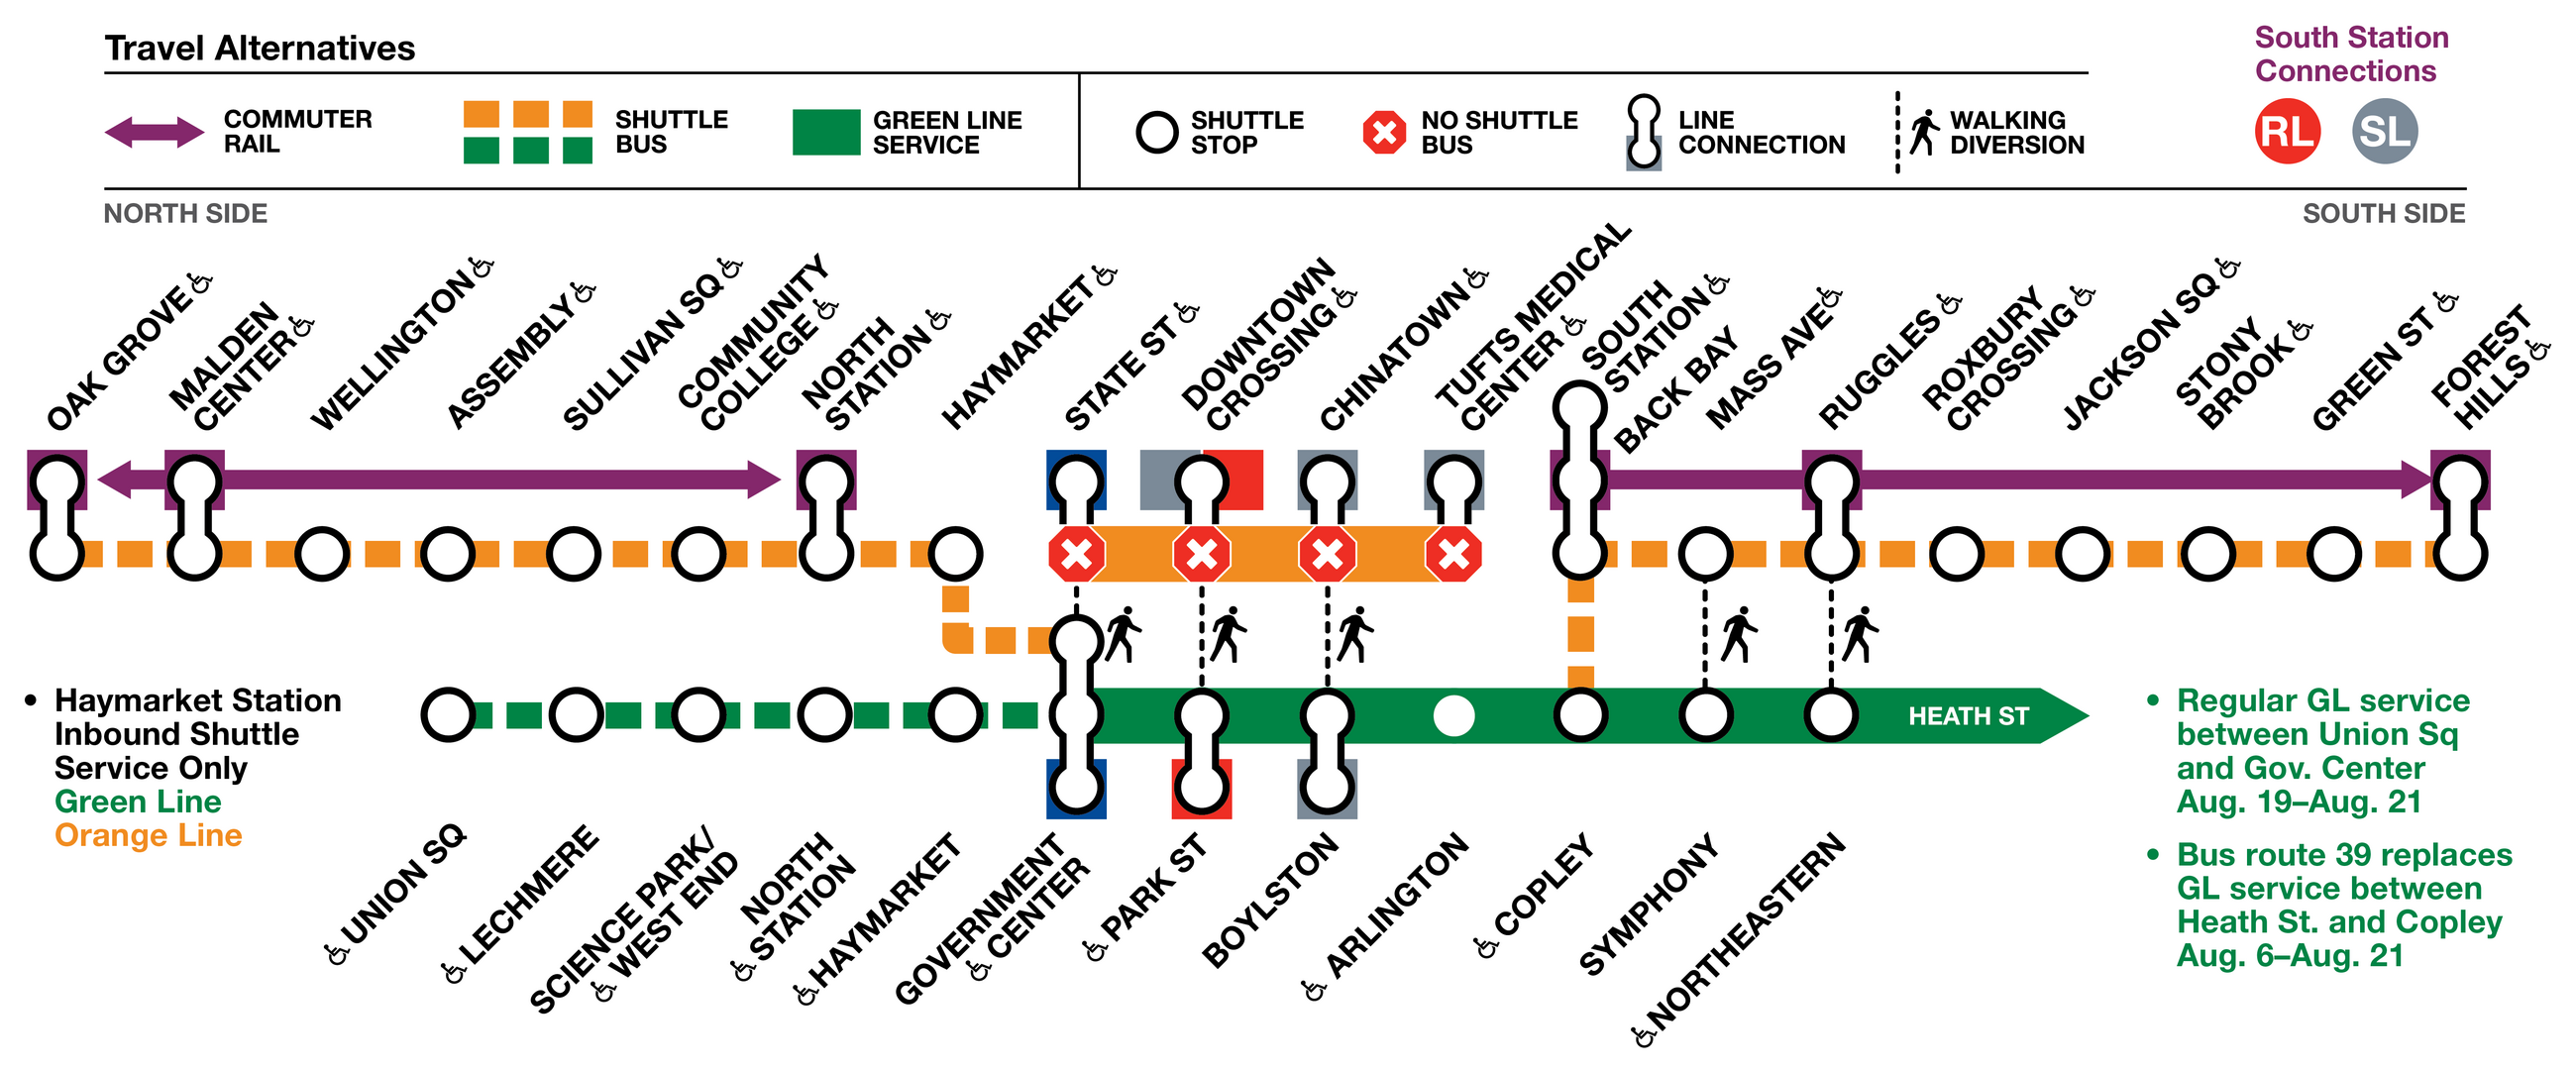 Alternate services during 30-day Orange Line shutdown